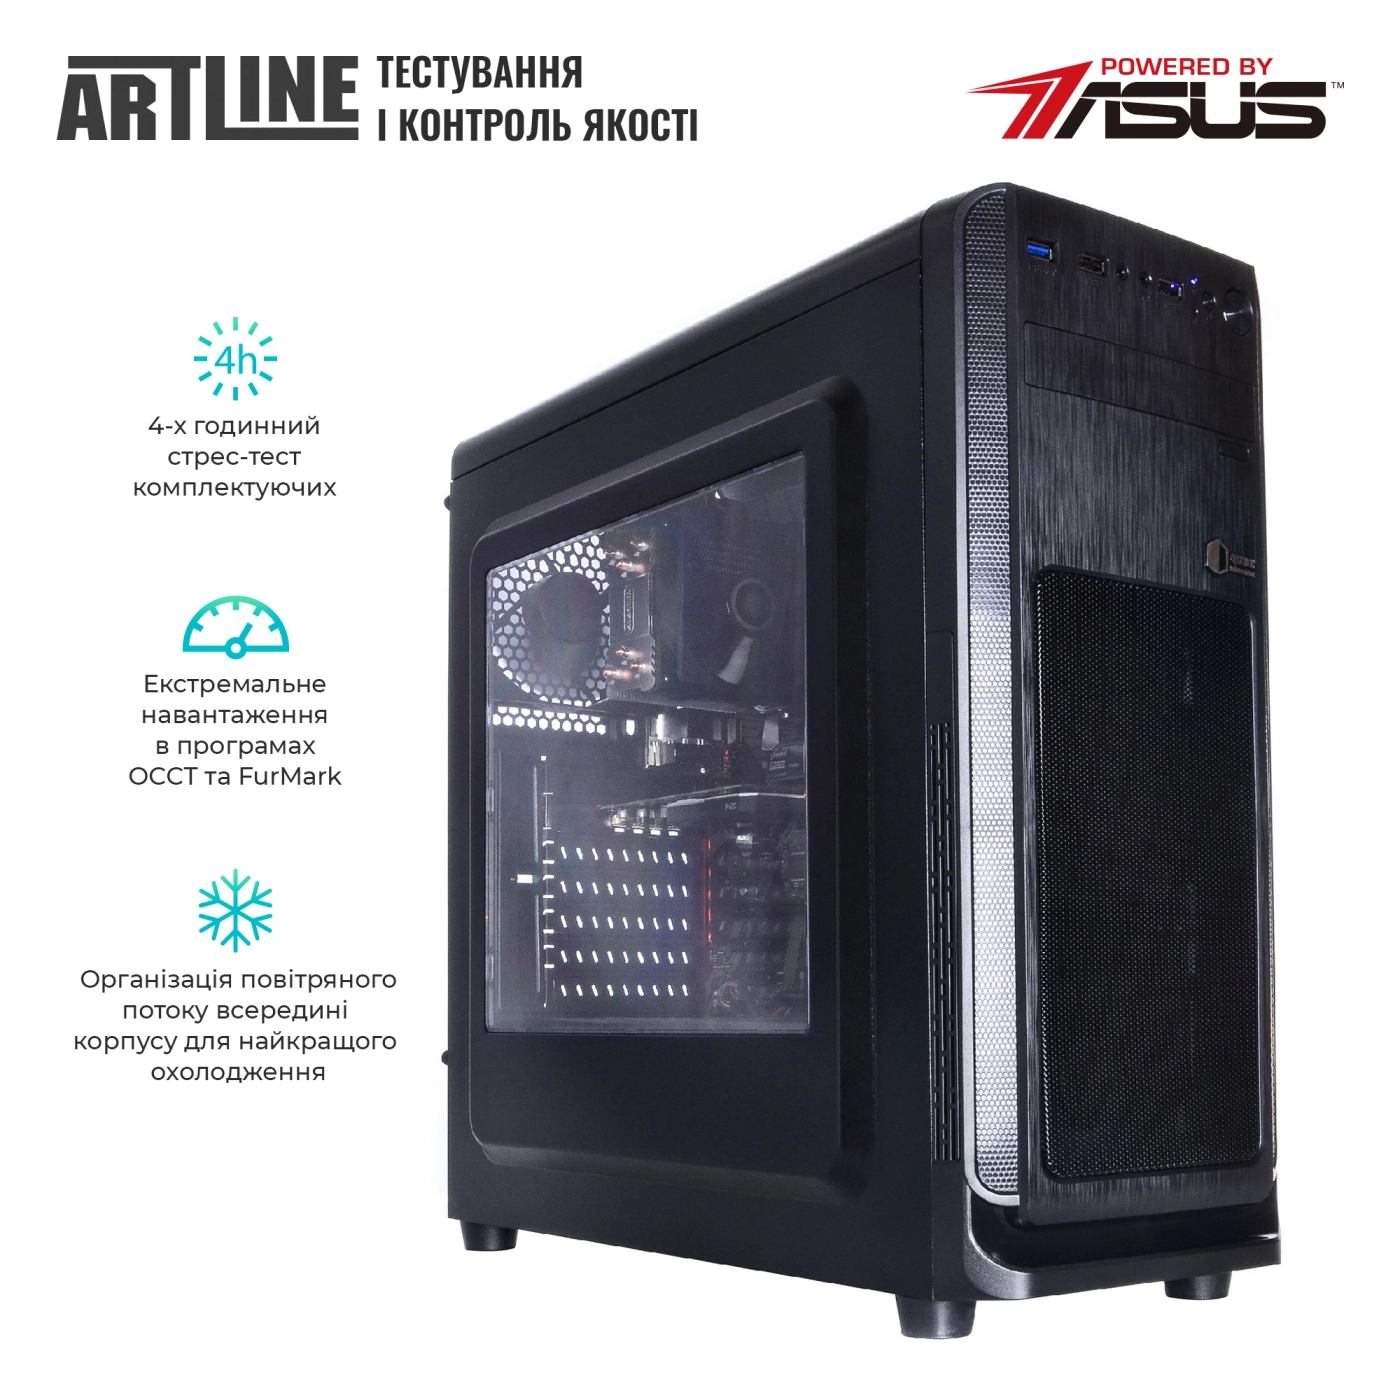 Купить Сервер ARTLINE Business T13v11 - фото 6